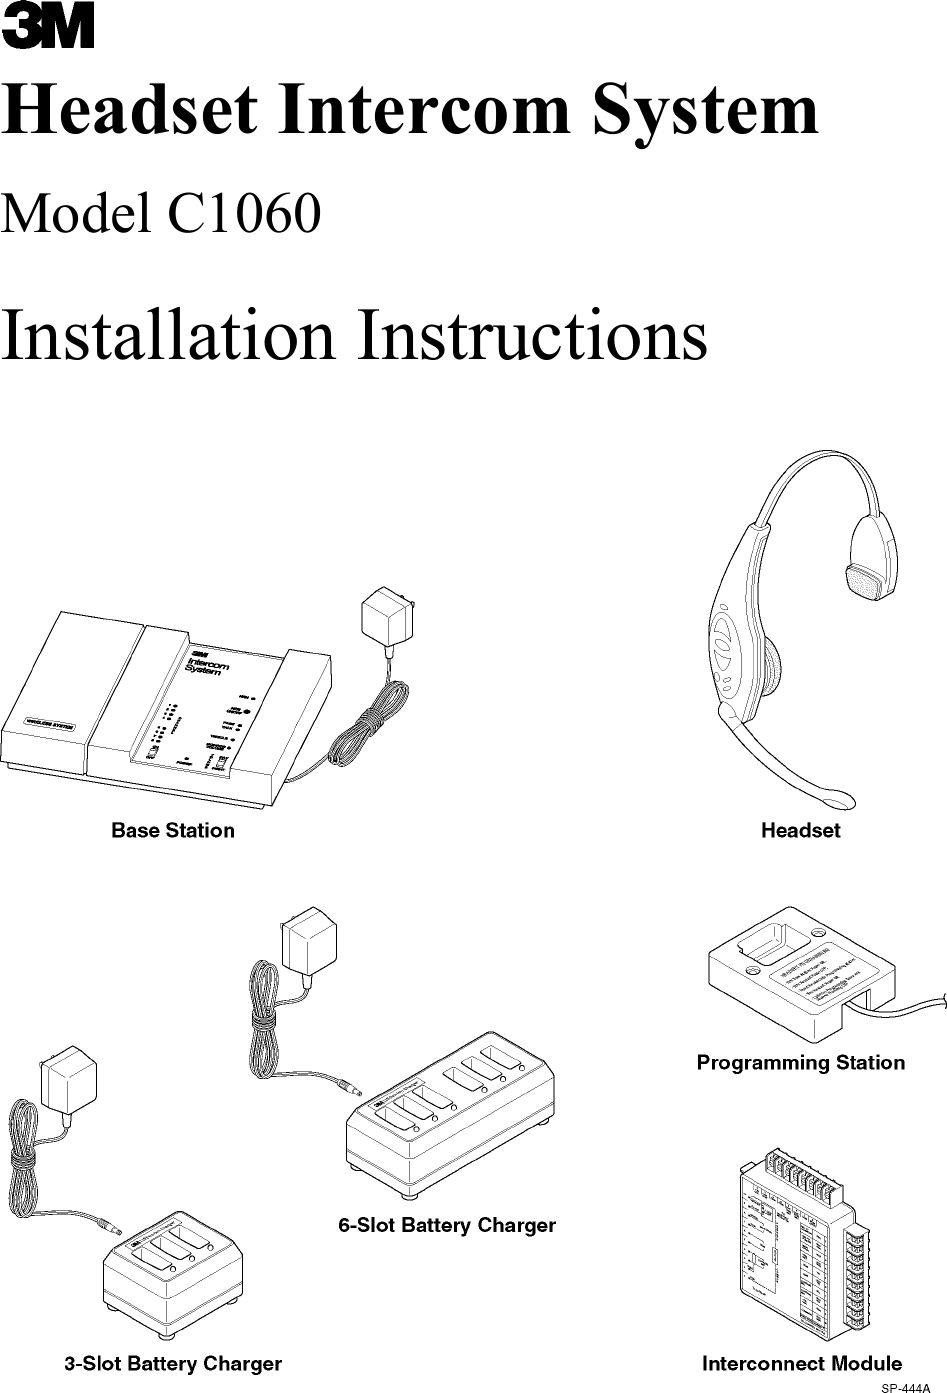   Headset Intercom System Model C1060 Installation Instructions 